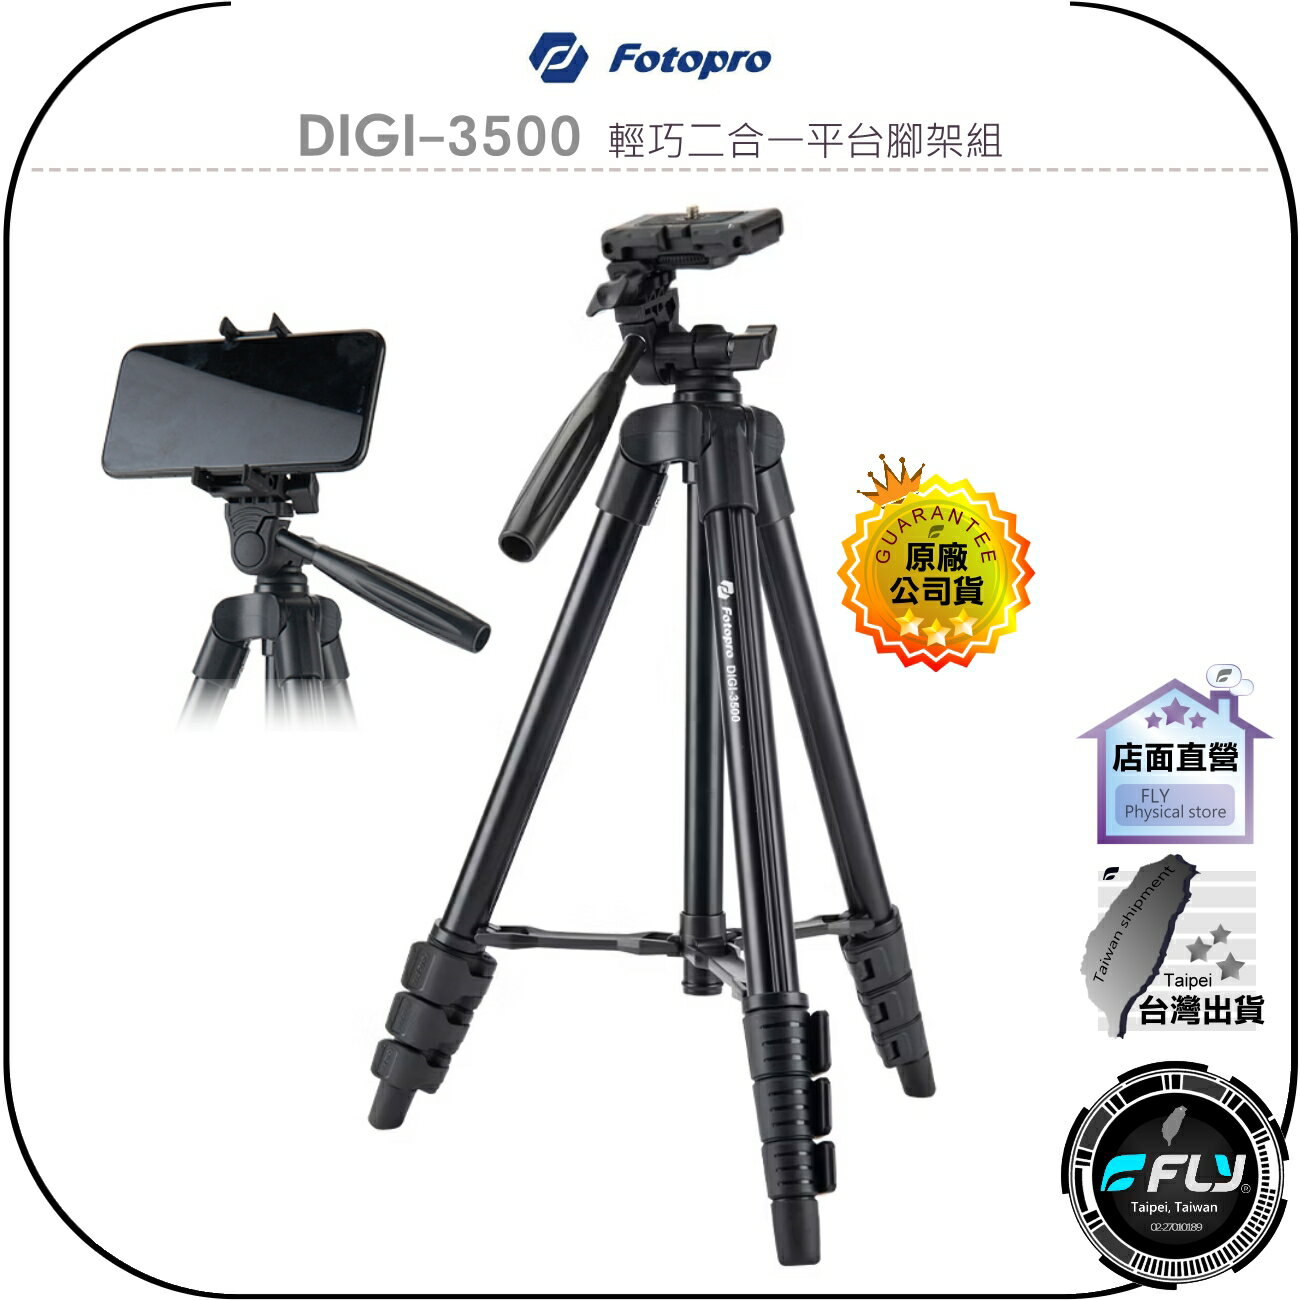 【飛翔商城】Fotopro DIGI-3500 輕巧二合一平台腳架組◉公司貨◉手機三腳架◉相機攝影架◉旅遊拍攝◉含遙控器